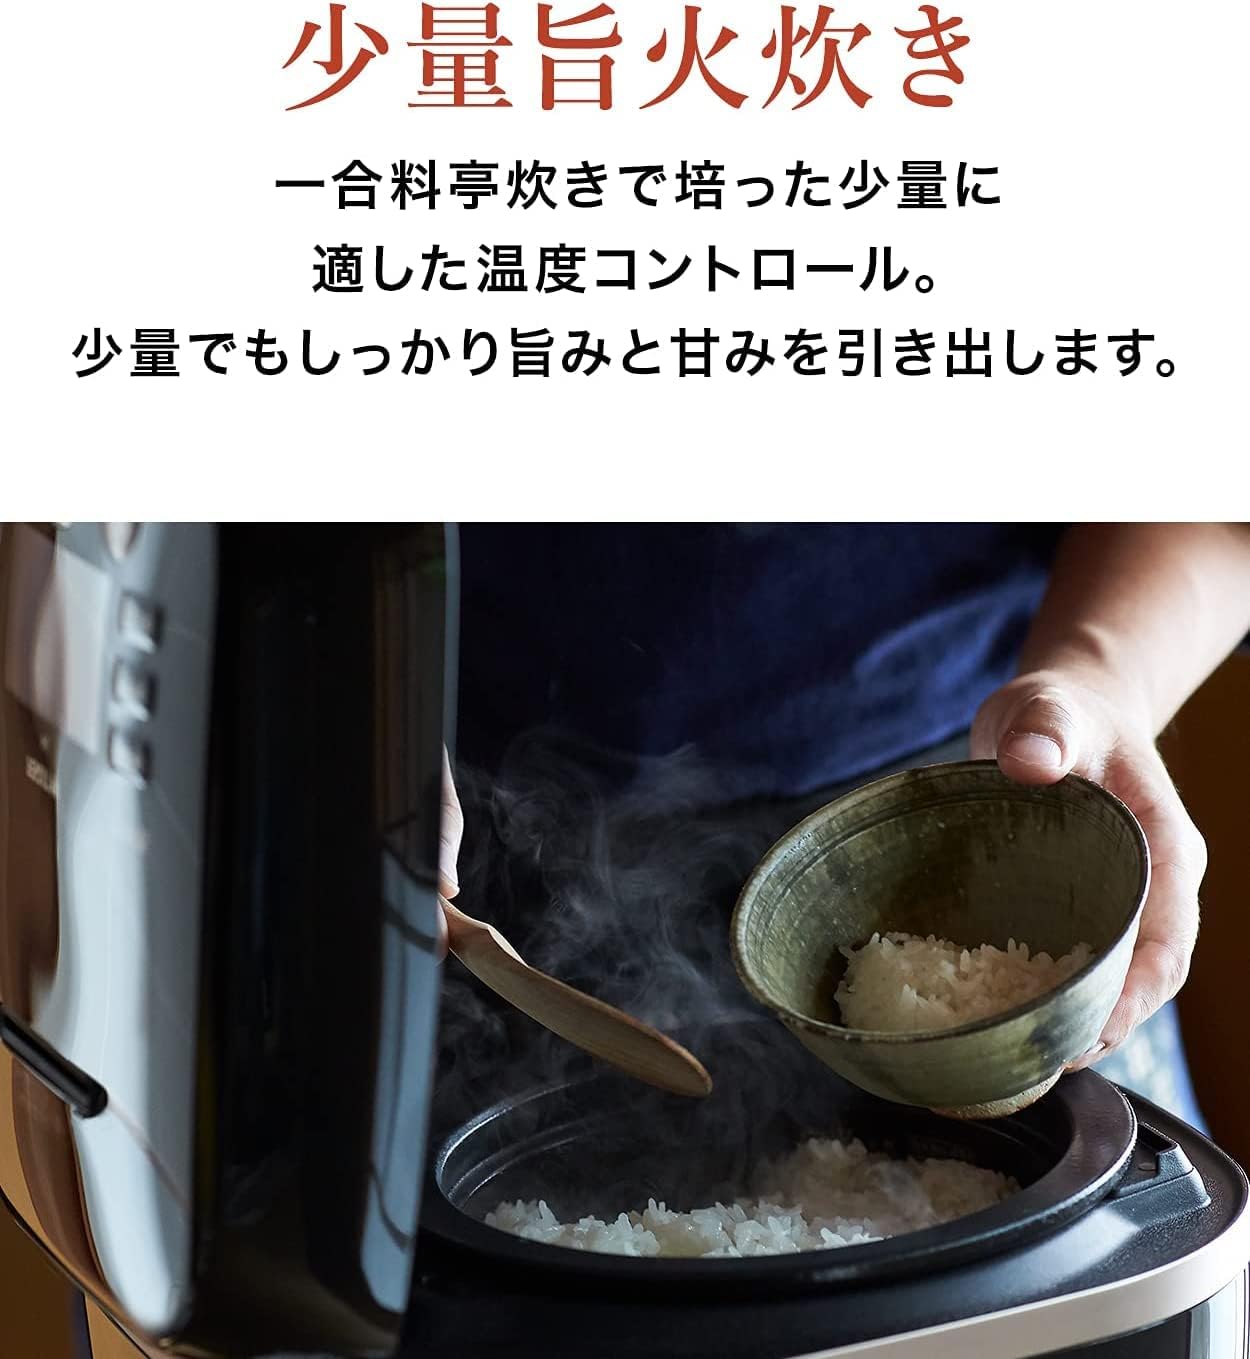 日本品牌 TIGER 虎牌 炊飯電子鍋(TIGER) 5.5合 壓力IH式電鍋 泡火烹飪 少量美味烹飪 米白色 JPI-A100 WO_YOUTW_584